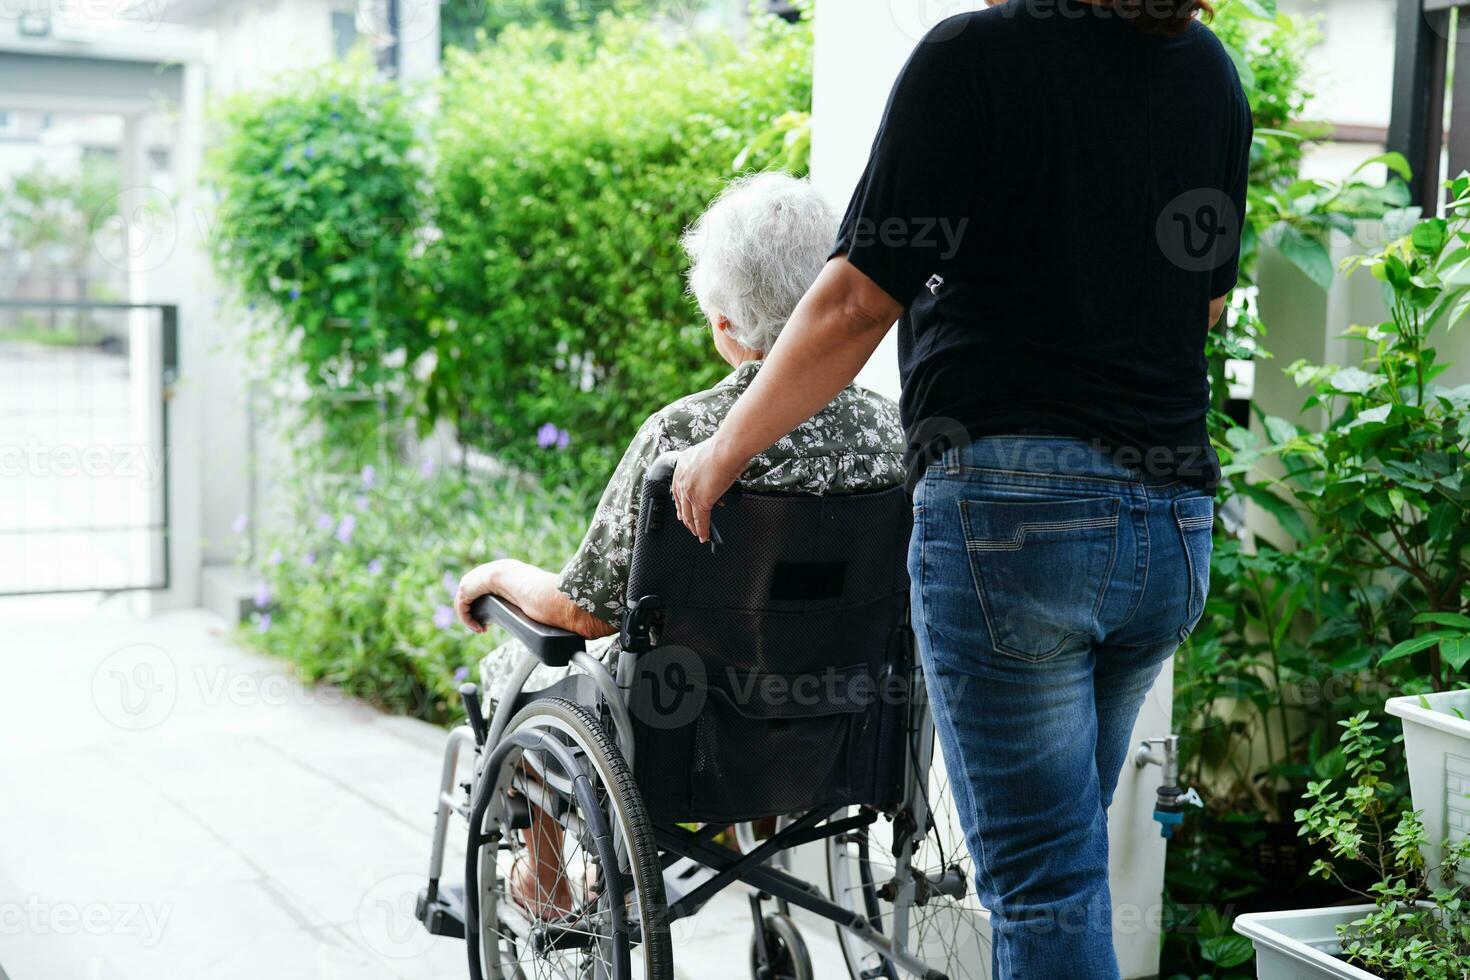 vårdgivare hjälp asiatisk äldre kvinna handikapp patient Sammanträde på rullstol i sjukhus, medicinsk begrepp. foto